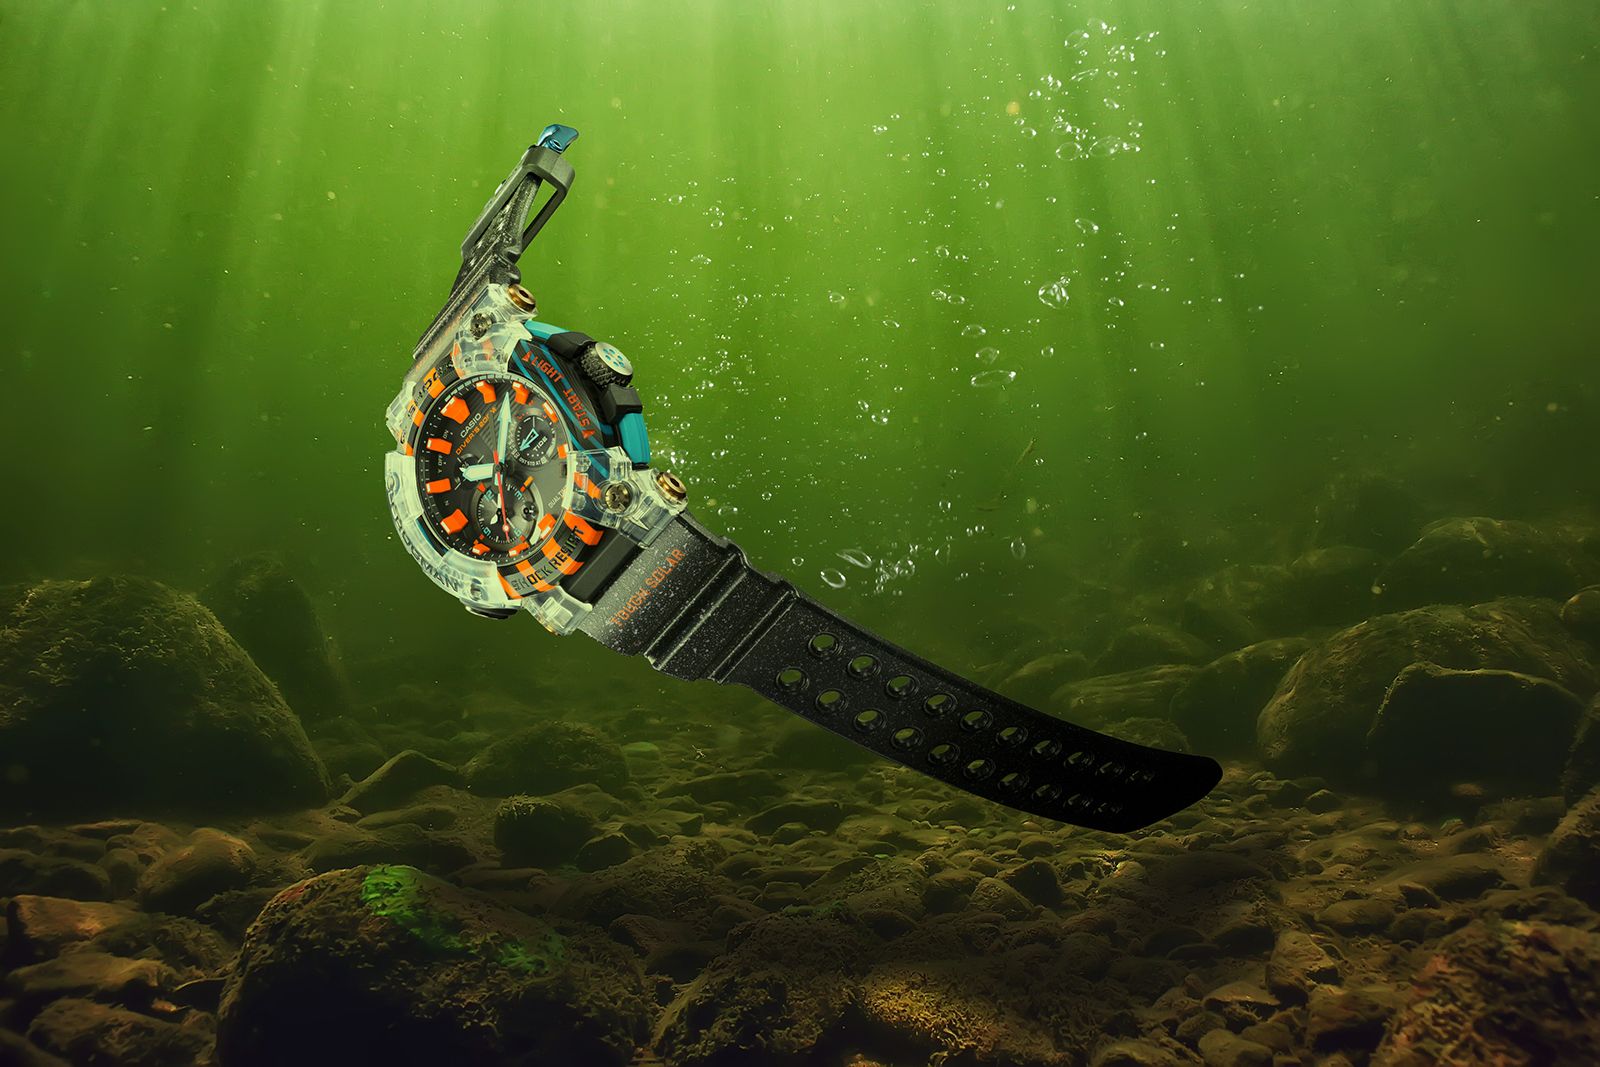 Casio G-Shock Frogman watch under water